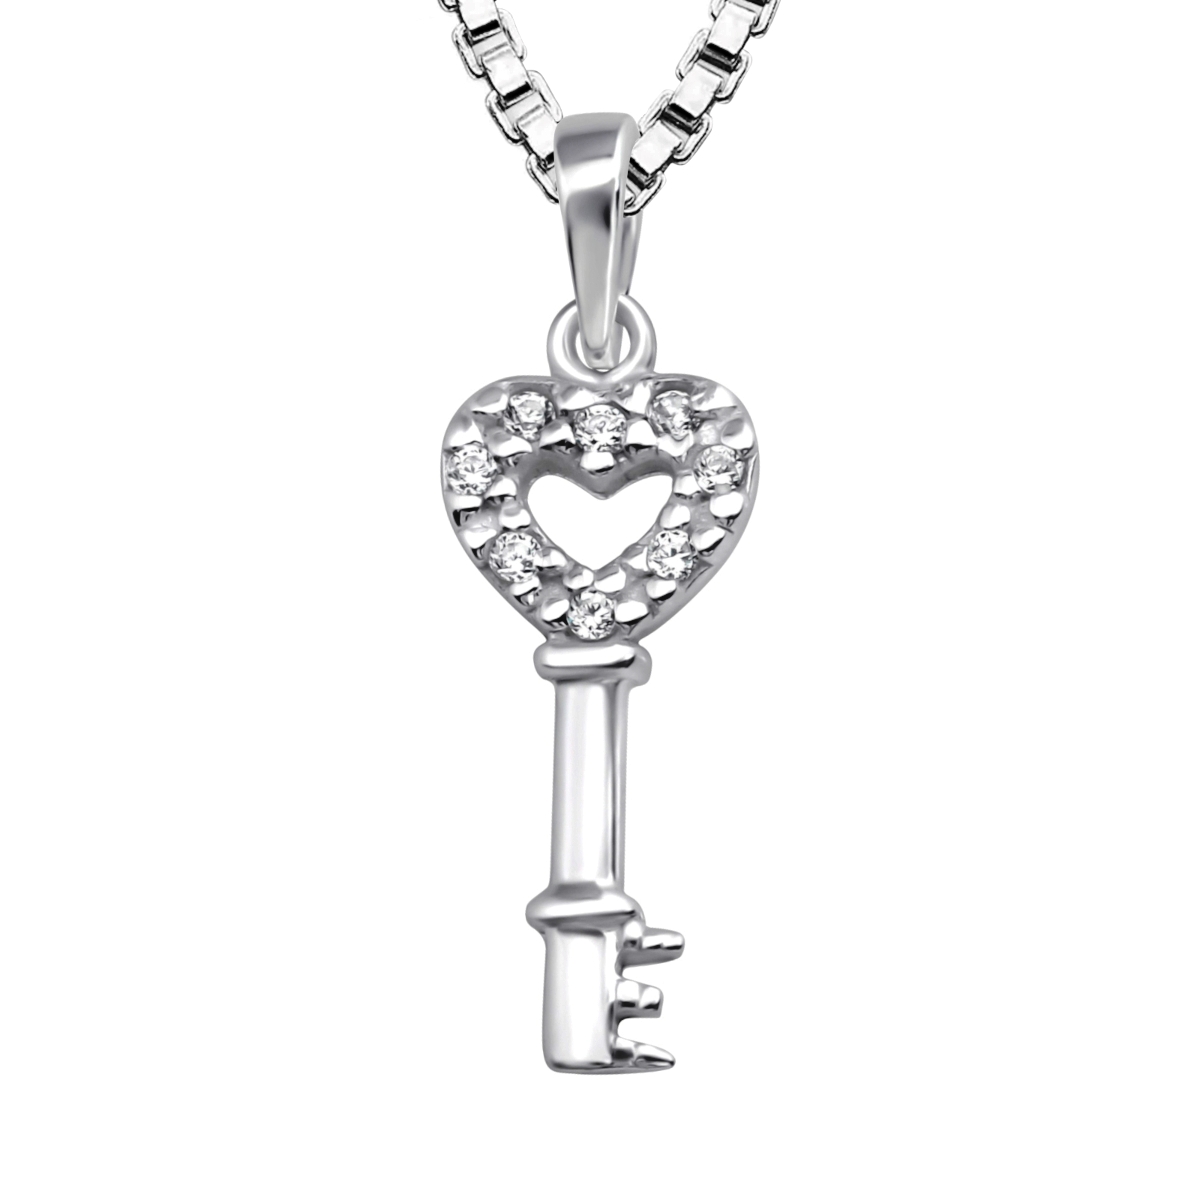 Barnhalsband Nyckel med hjärta - halsband i äkta silver